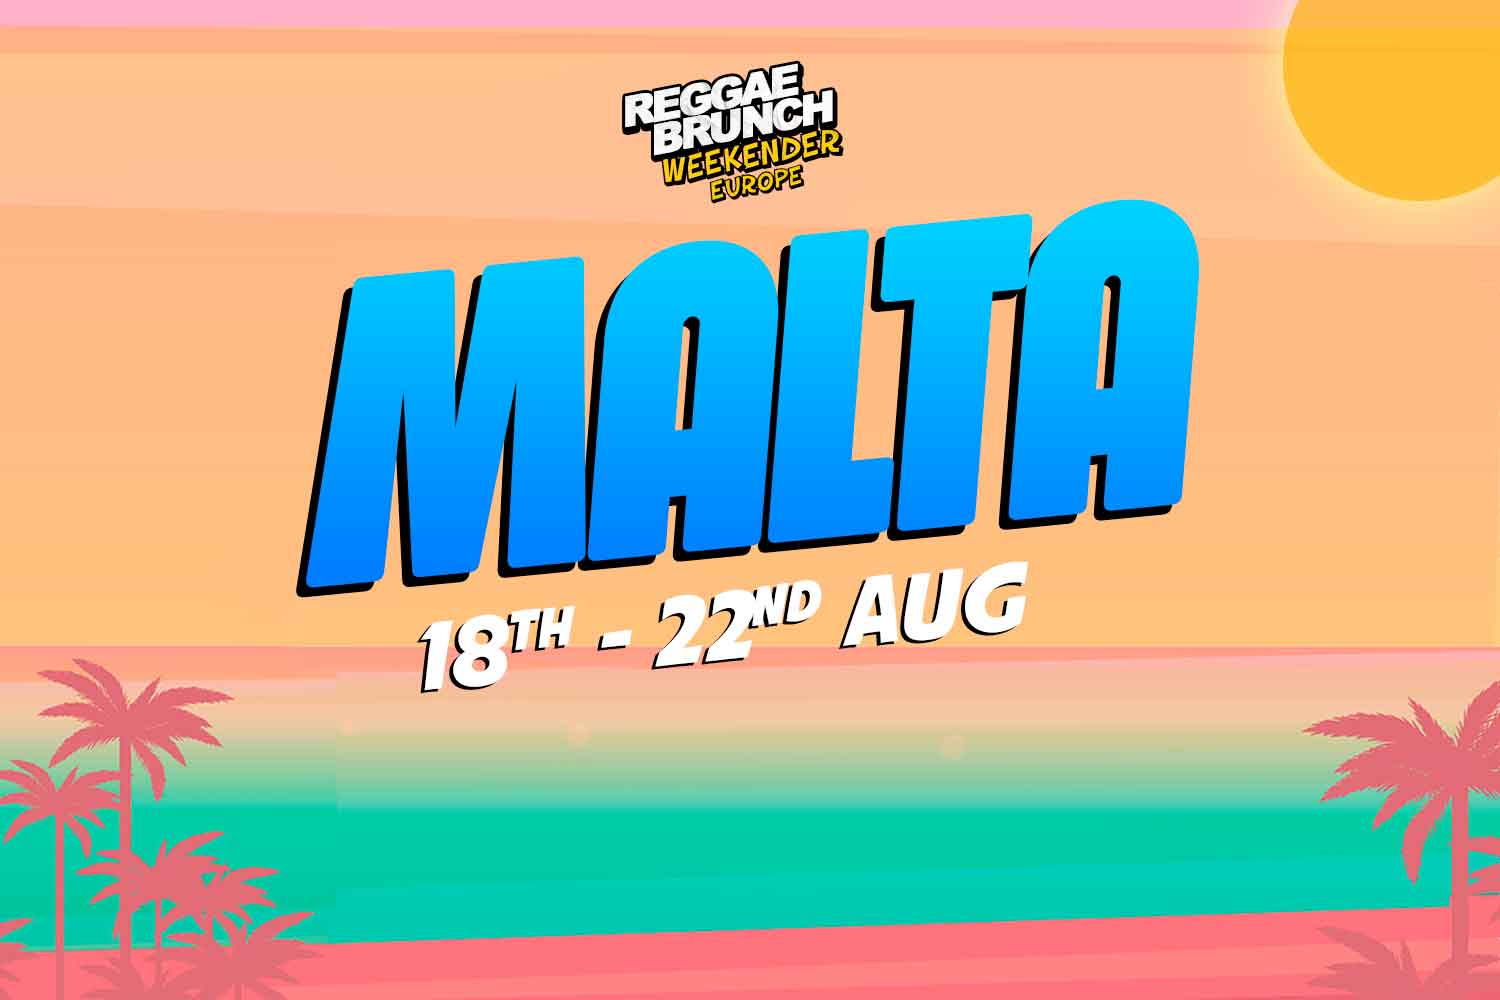 18th - 22nd Aug Malta Weekender